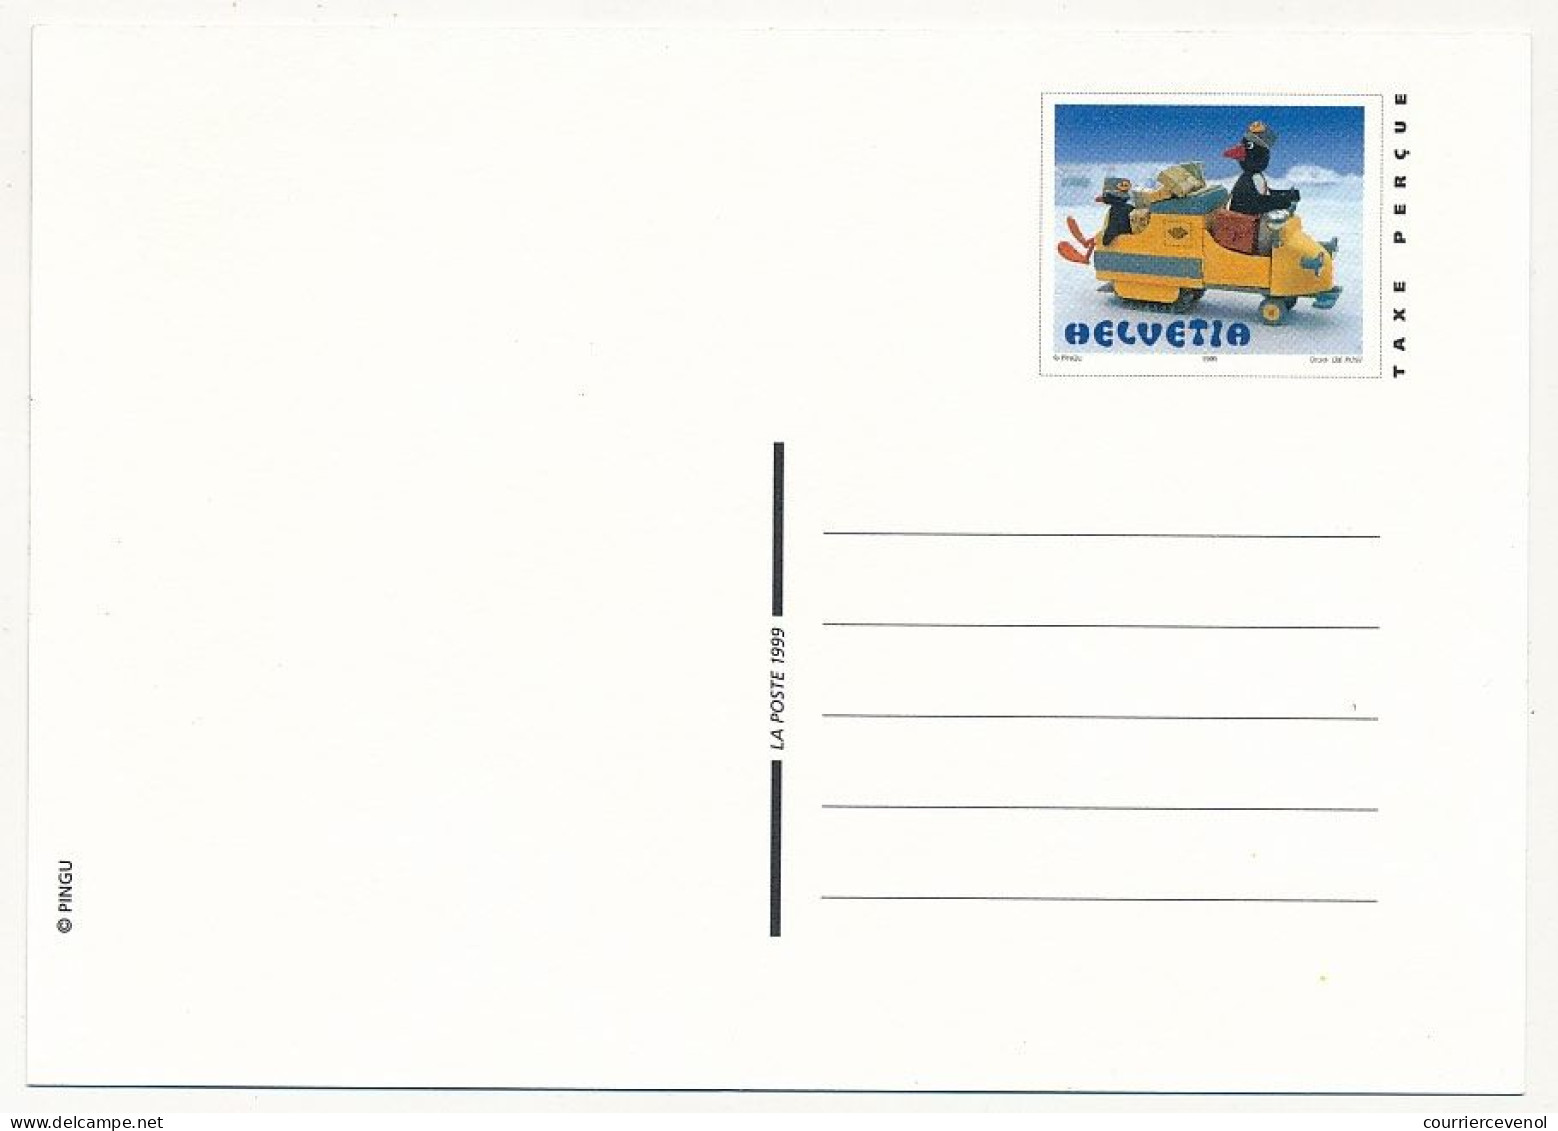 SUISSE - 2 Entiers Postaux (CPs) - (Jouet / Voiture Postale Dans Les Glaces) - 1 CP Neuve, 1 Obl.1er Jour Solothurn - Stamped Stationery